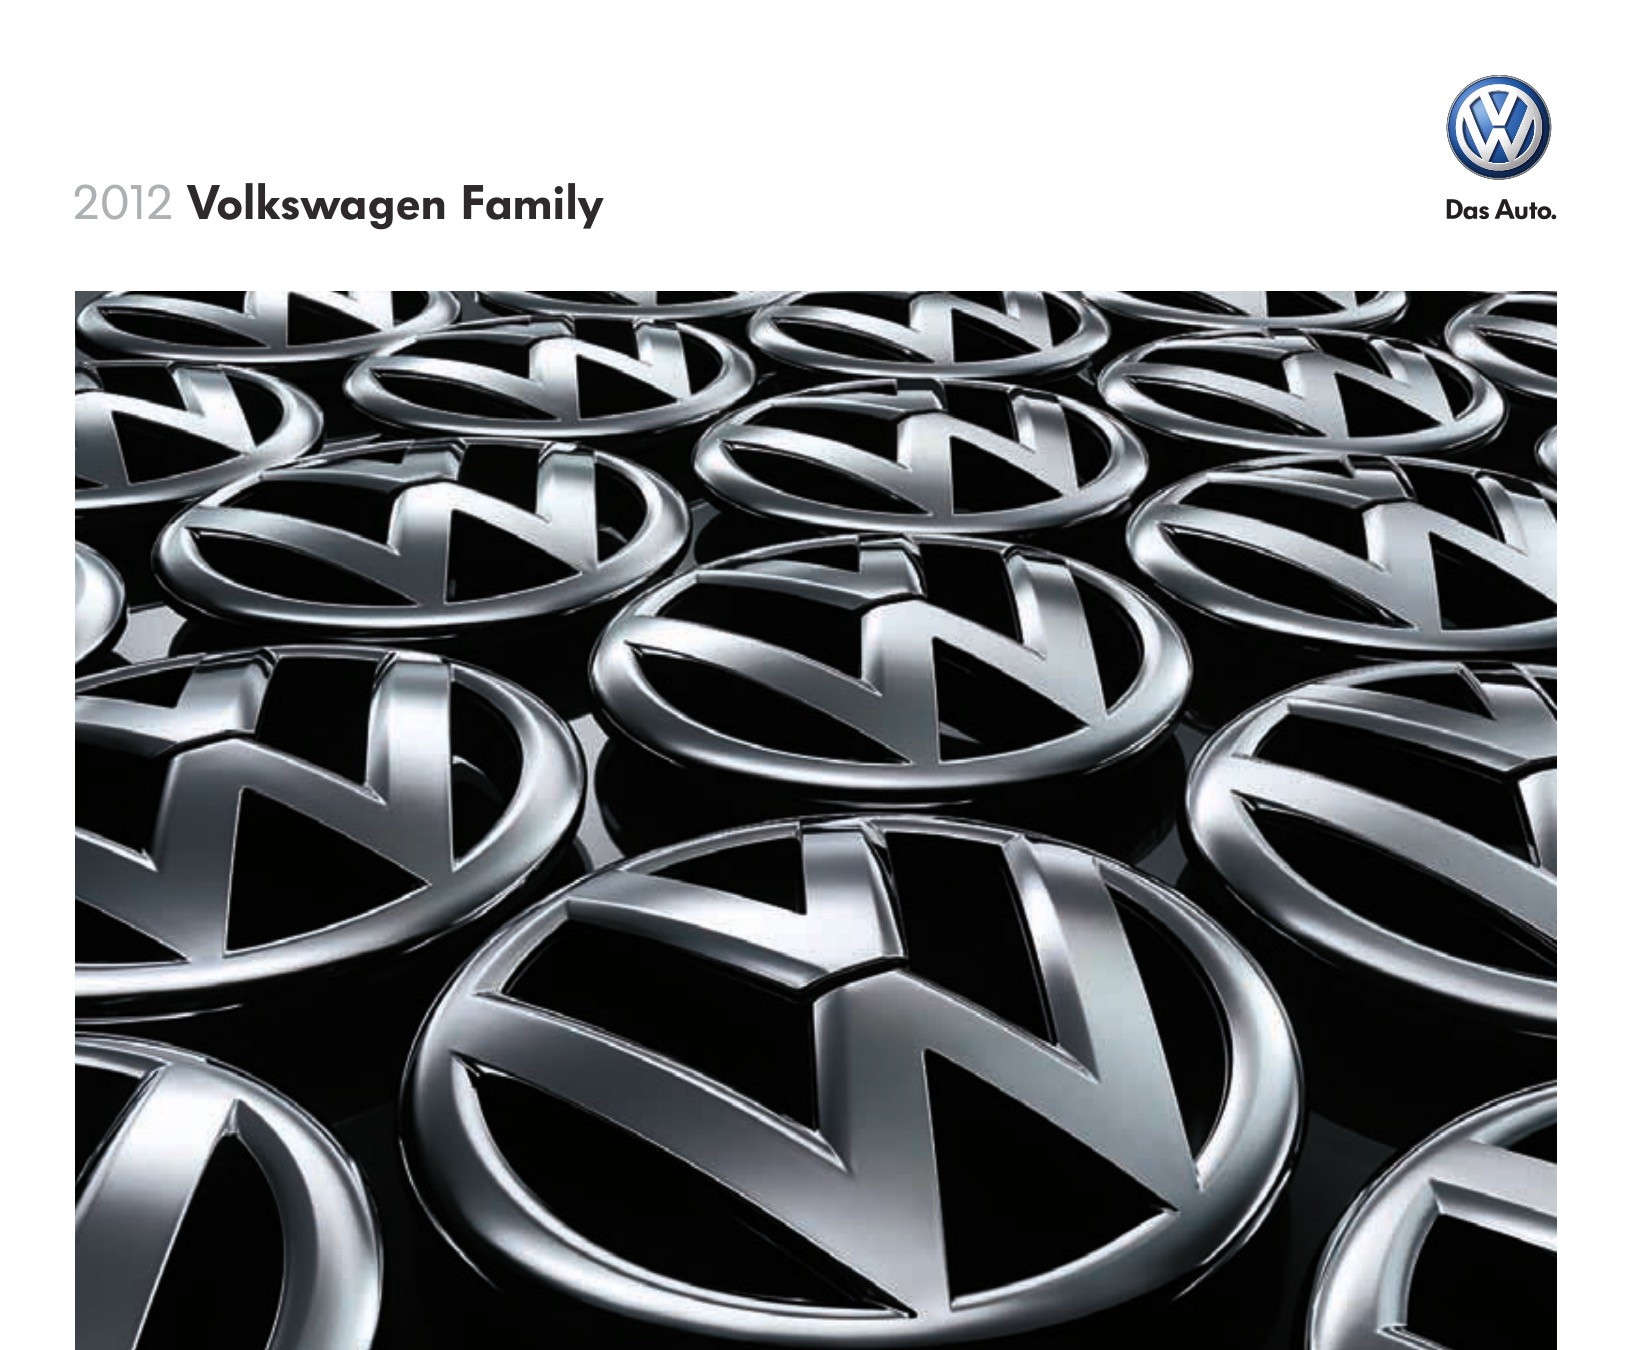 2012 VW Full-Line